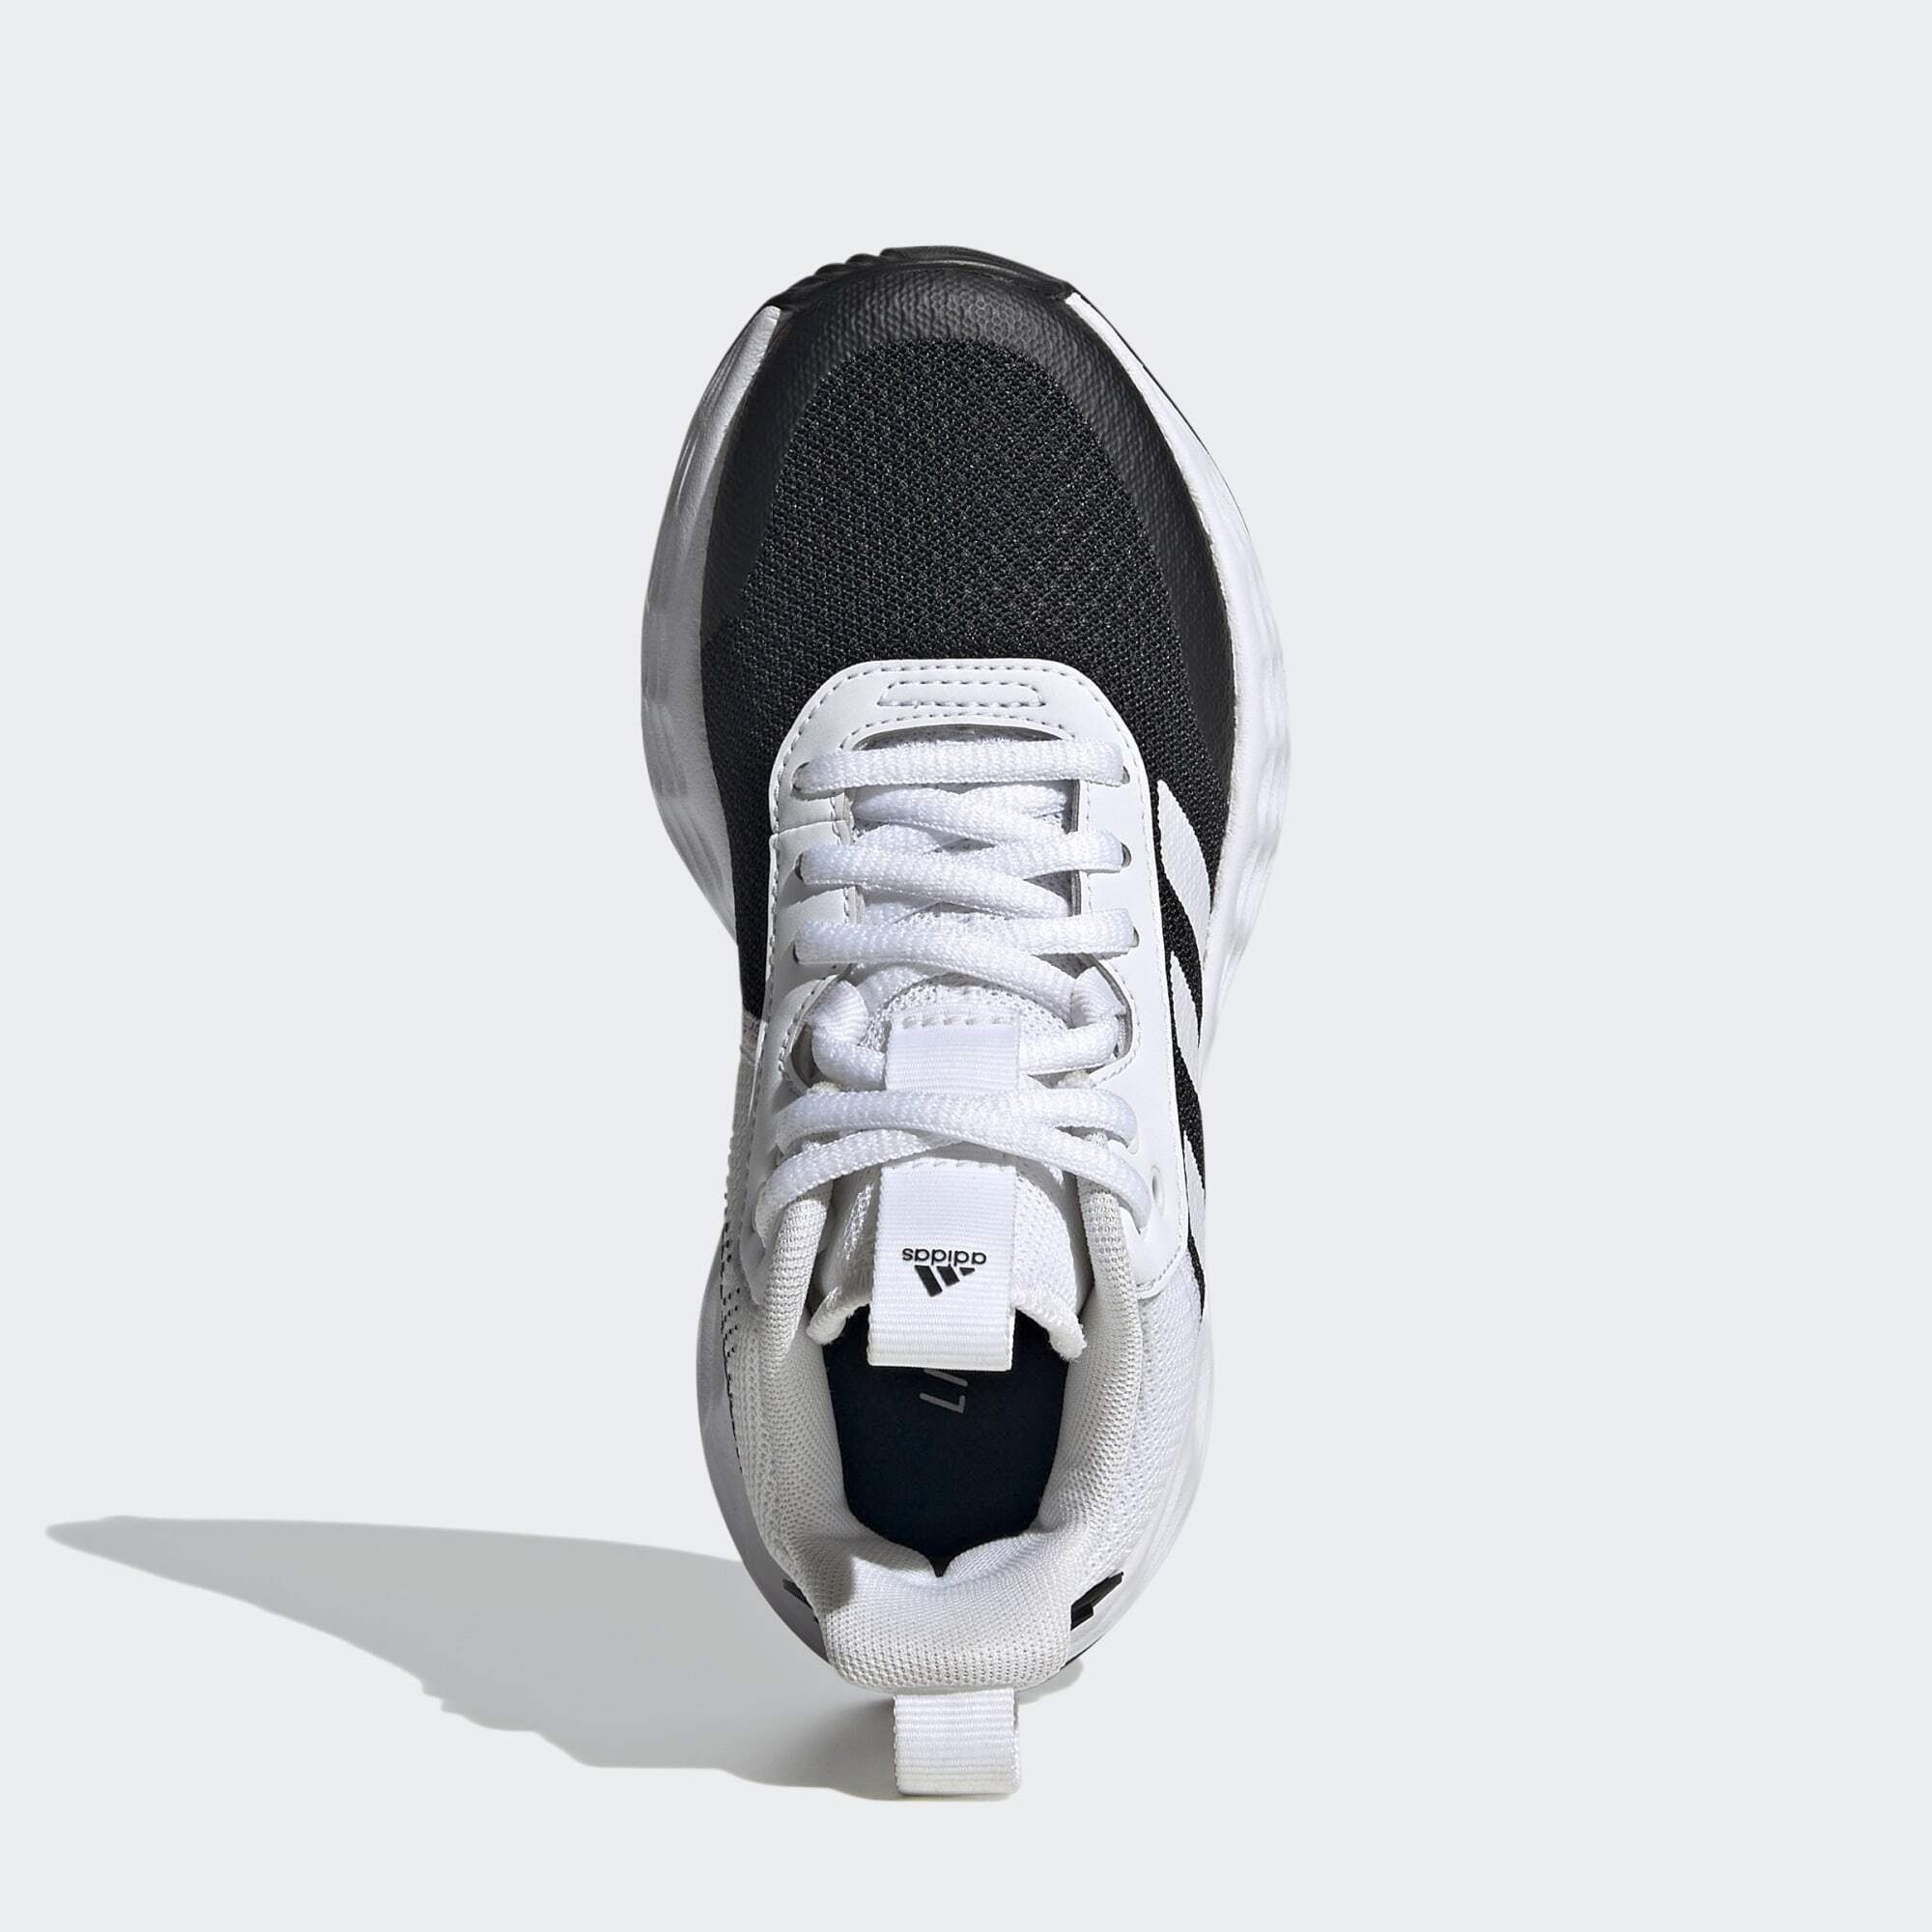 BASKETBALLSCHUH / White adidas 2.0 Core OWNTHEGAME Cloud Performance Black Core / Basketballschuh Black